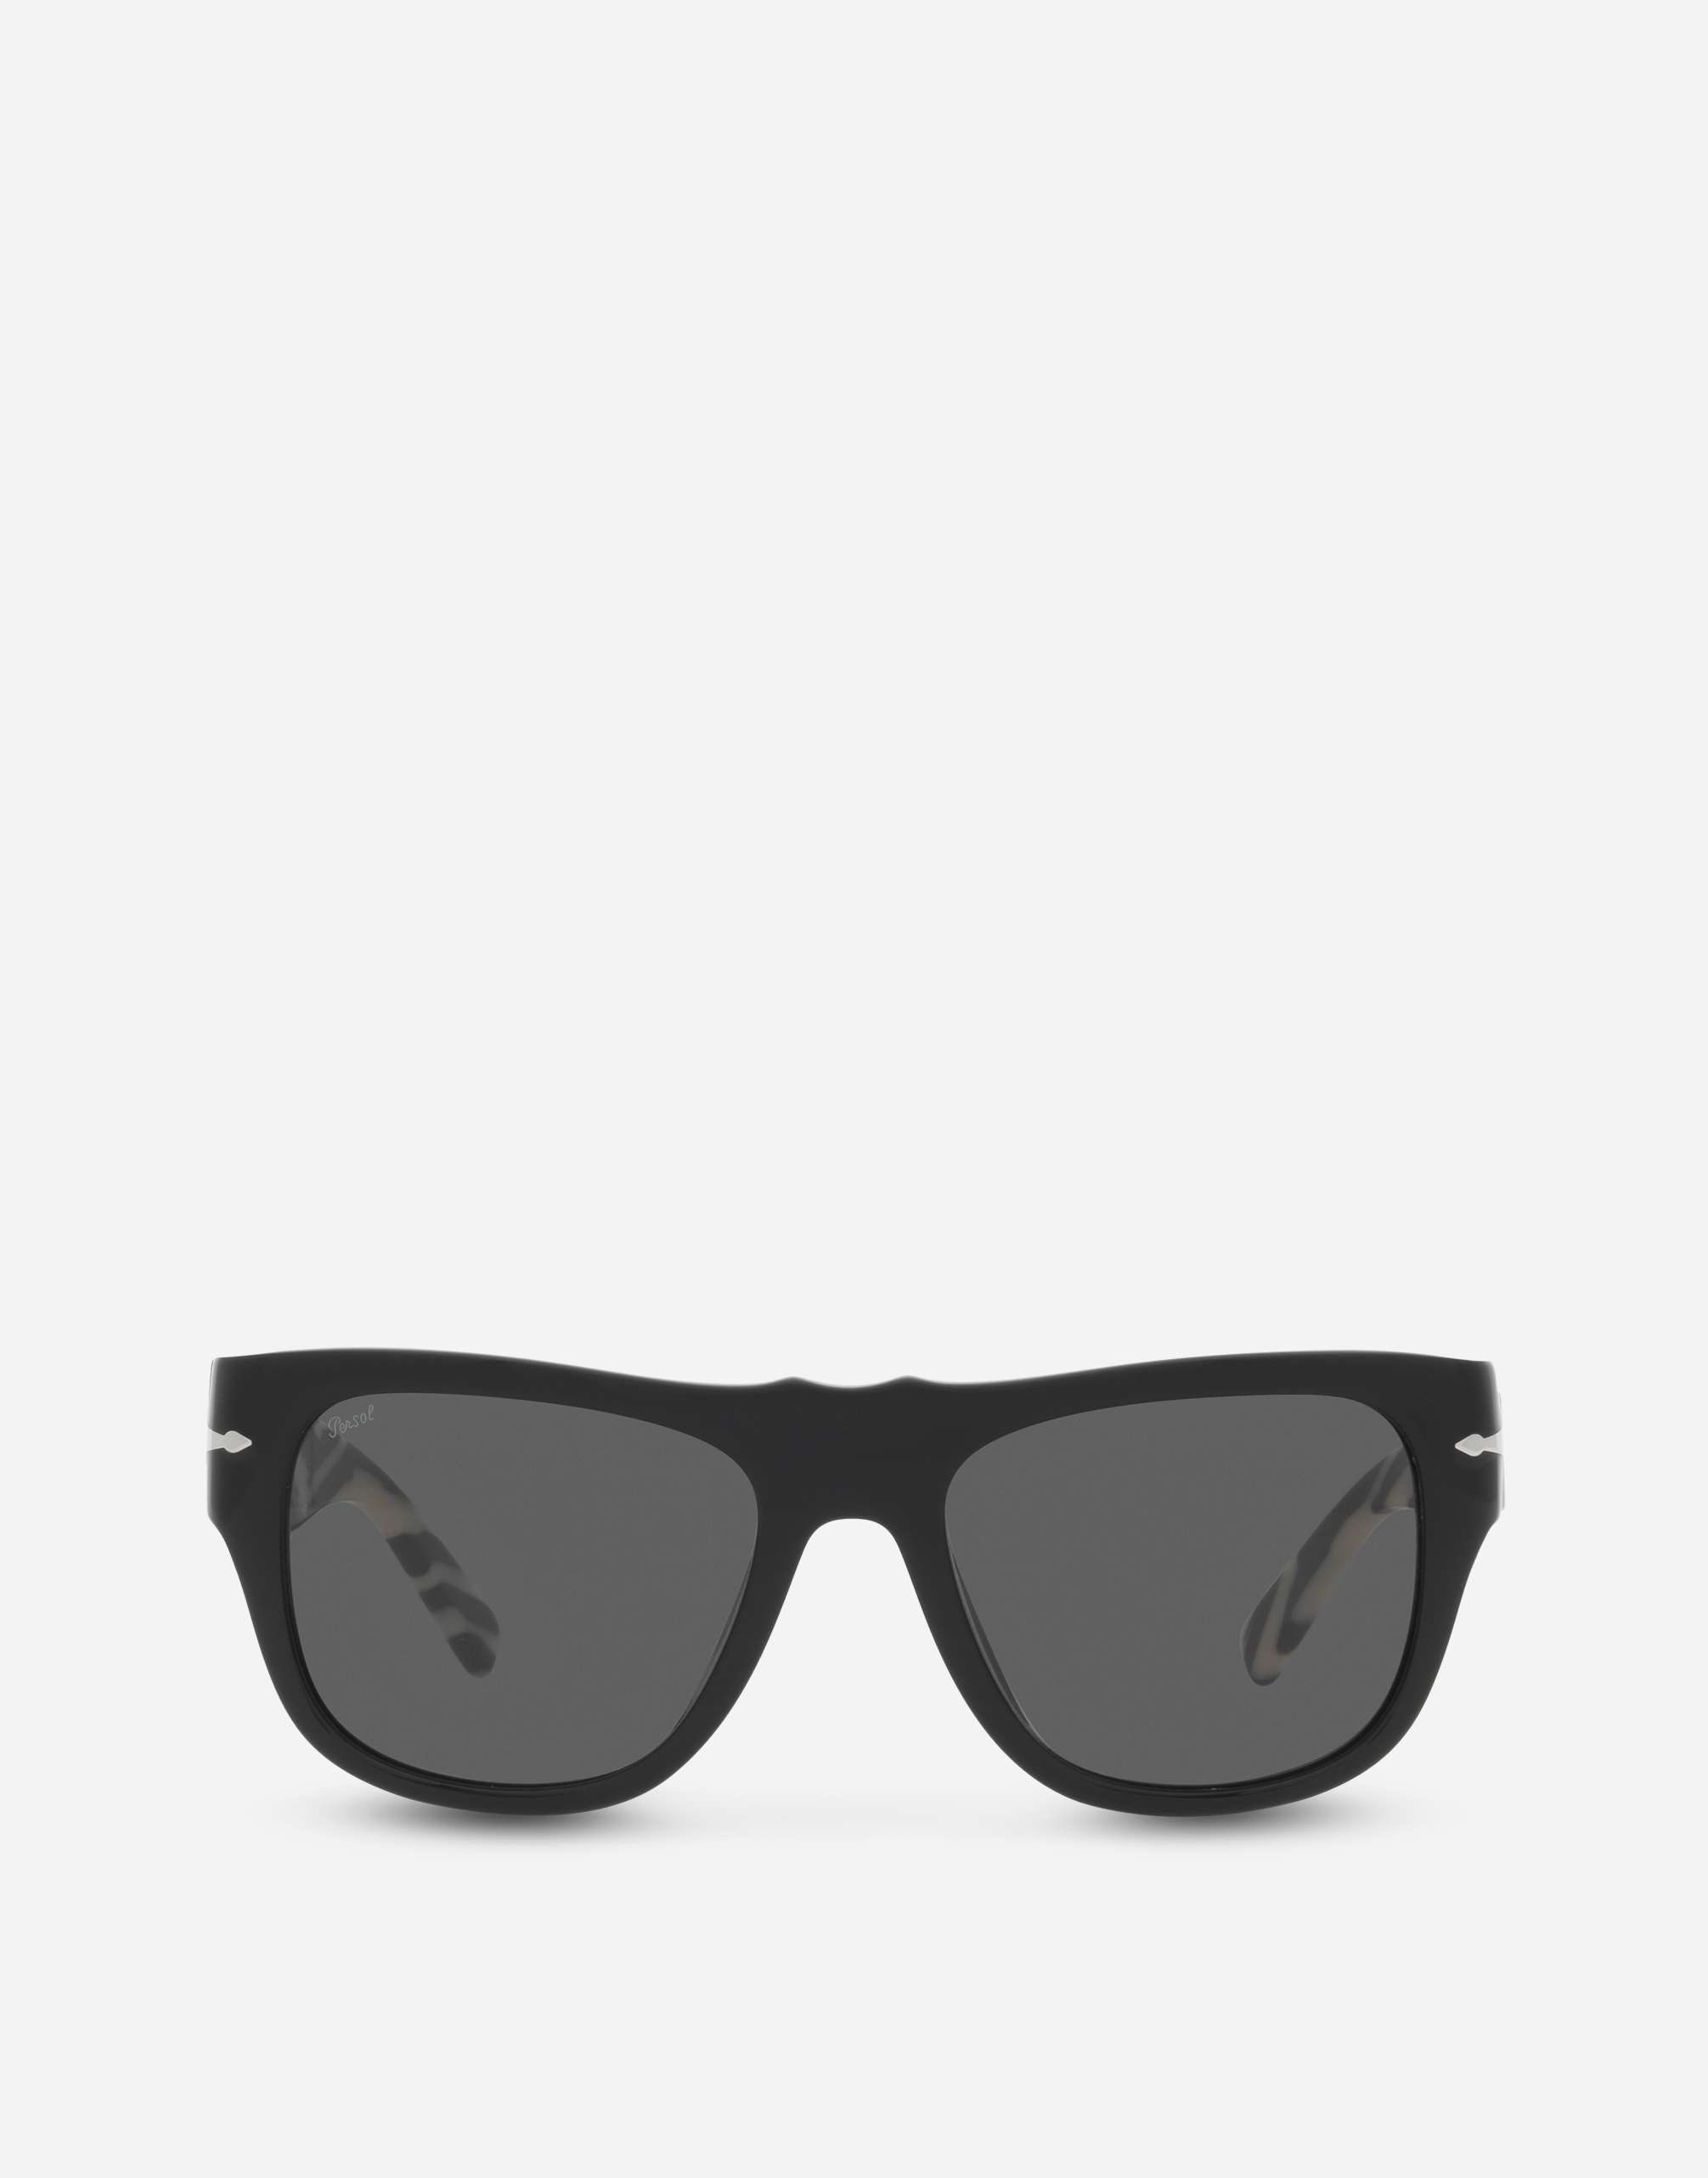 Dolce&Gabbana x Persol sunglasses in black & zebra print